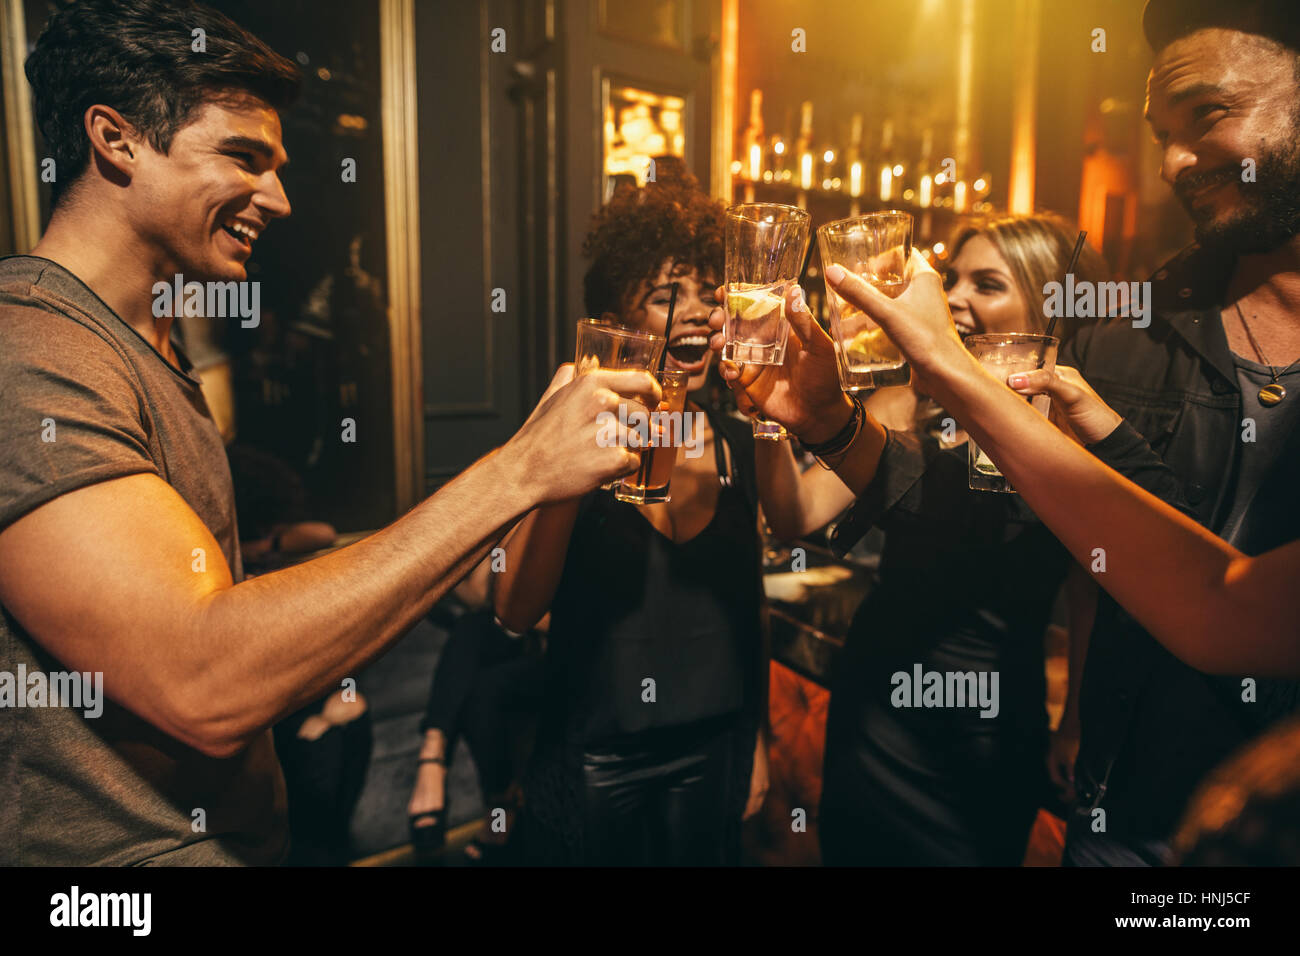 Gruppe von Männern und Frauen genießen Getränke im Nachtclub. Junge Menschen in bar Cocktails Toasten und lachen. Stockfoto